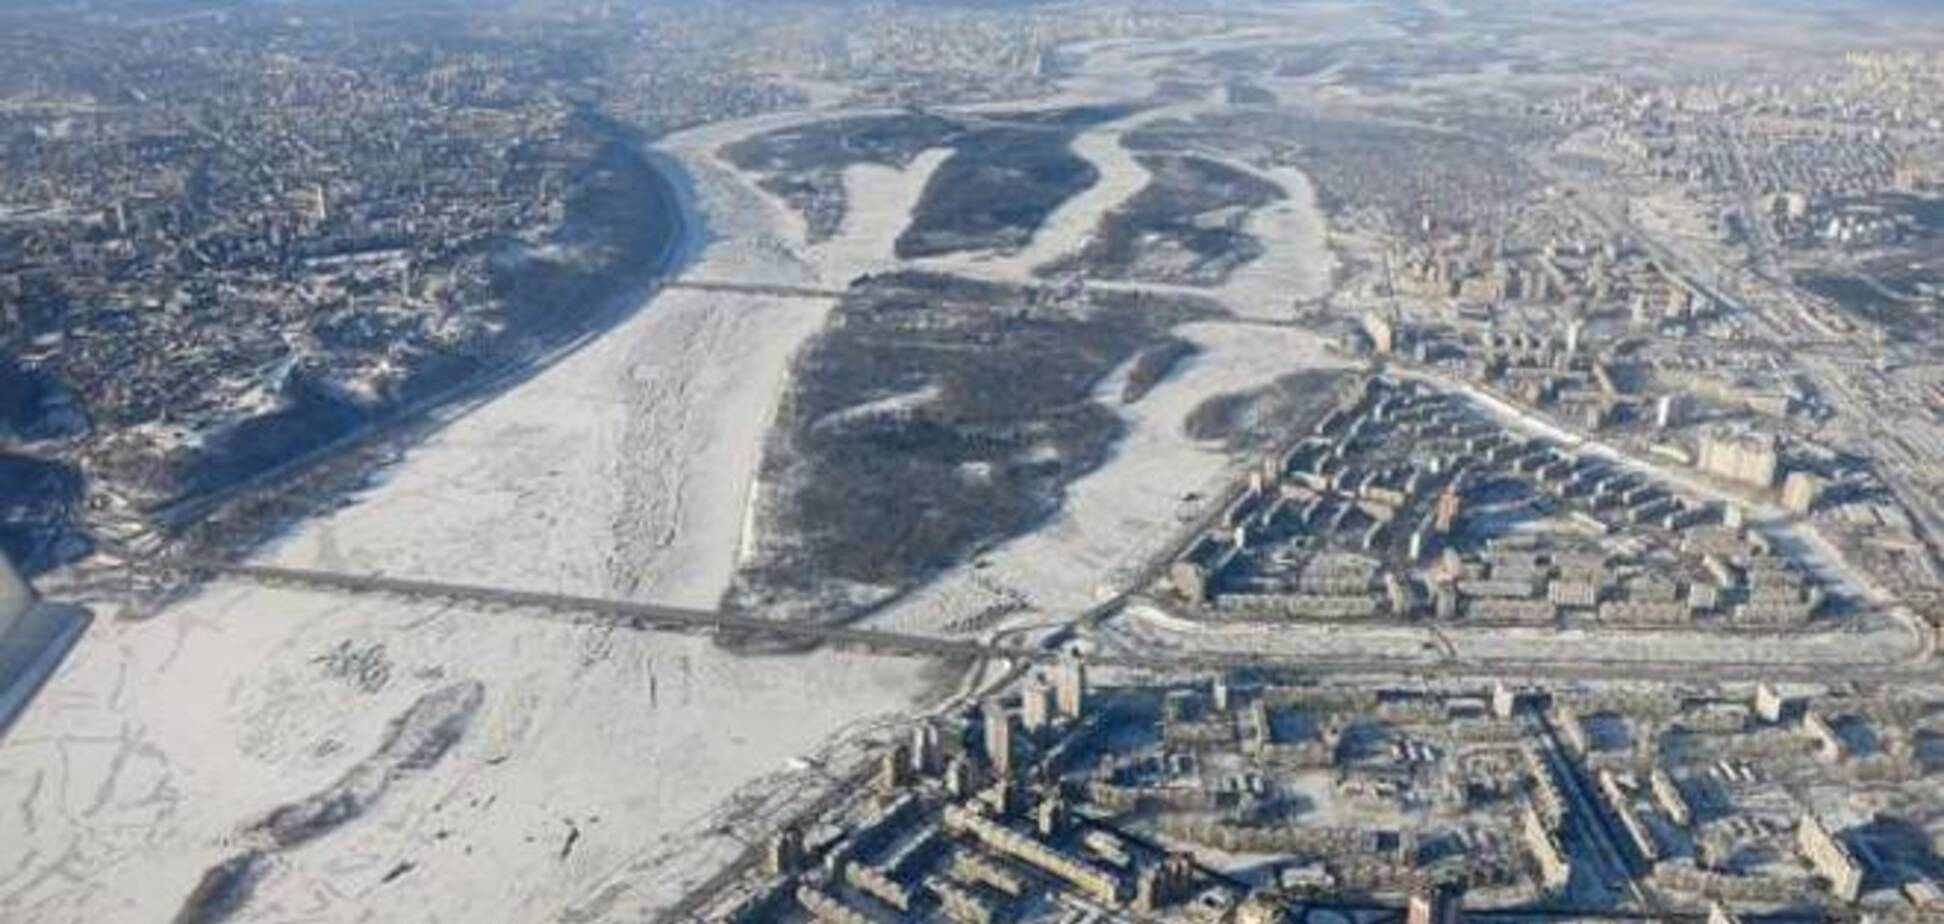 У мережі з'явилися фото зимового Києва з висоти пташиного польоту